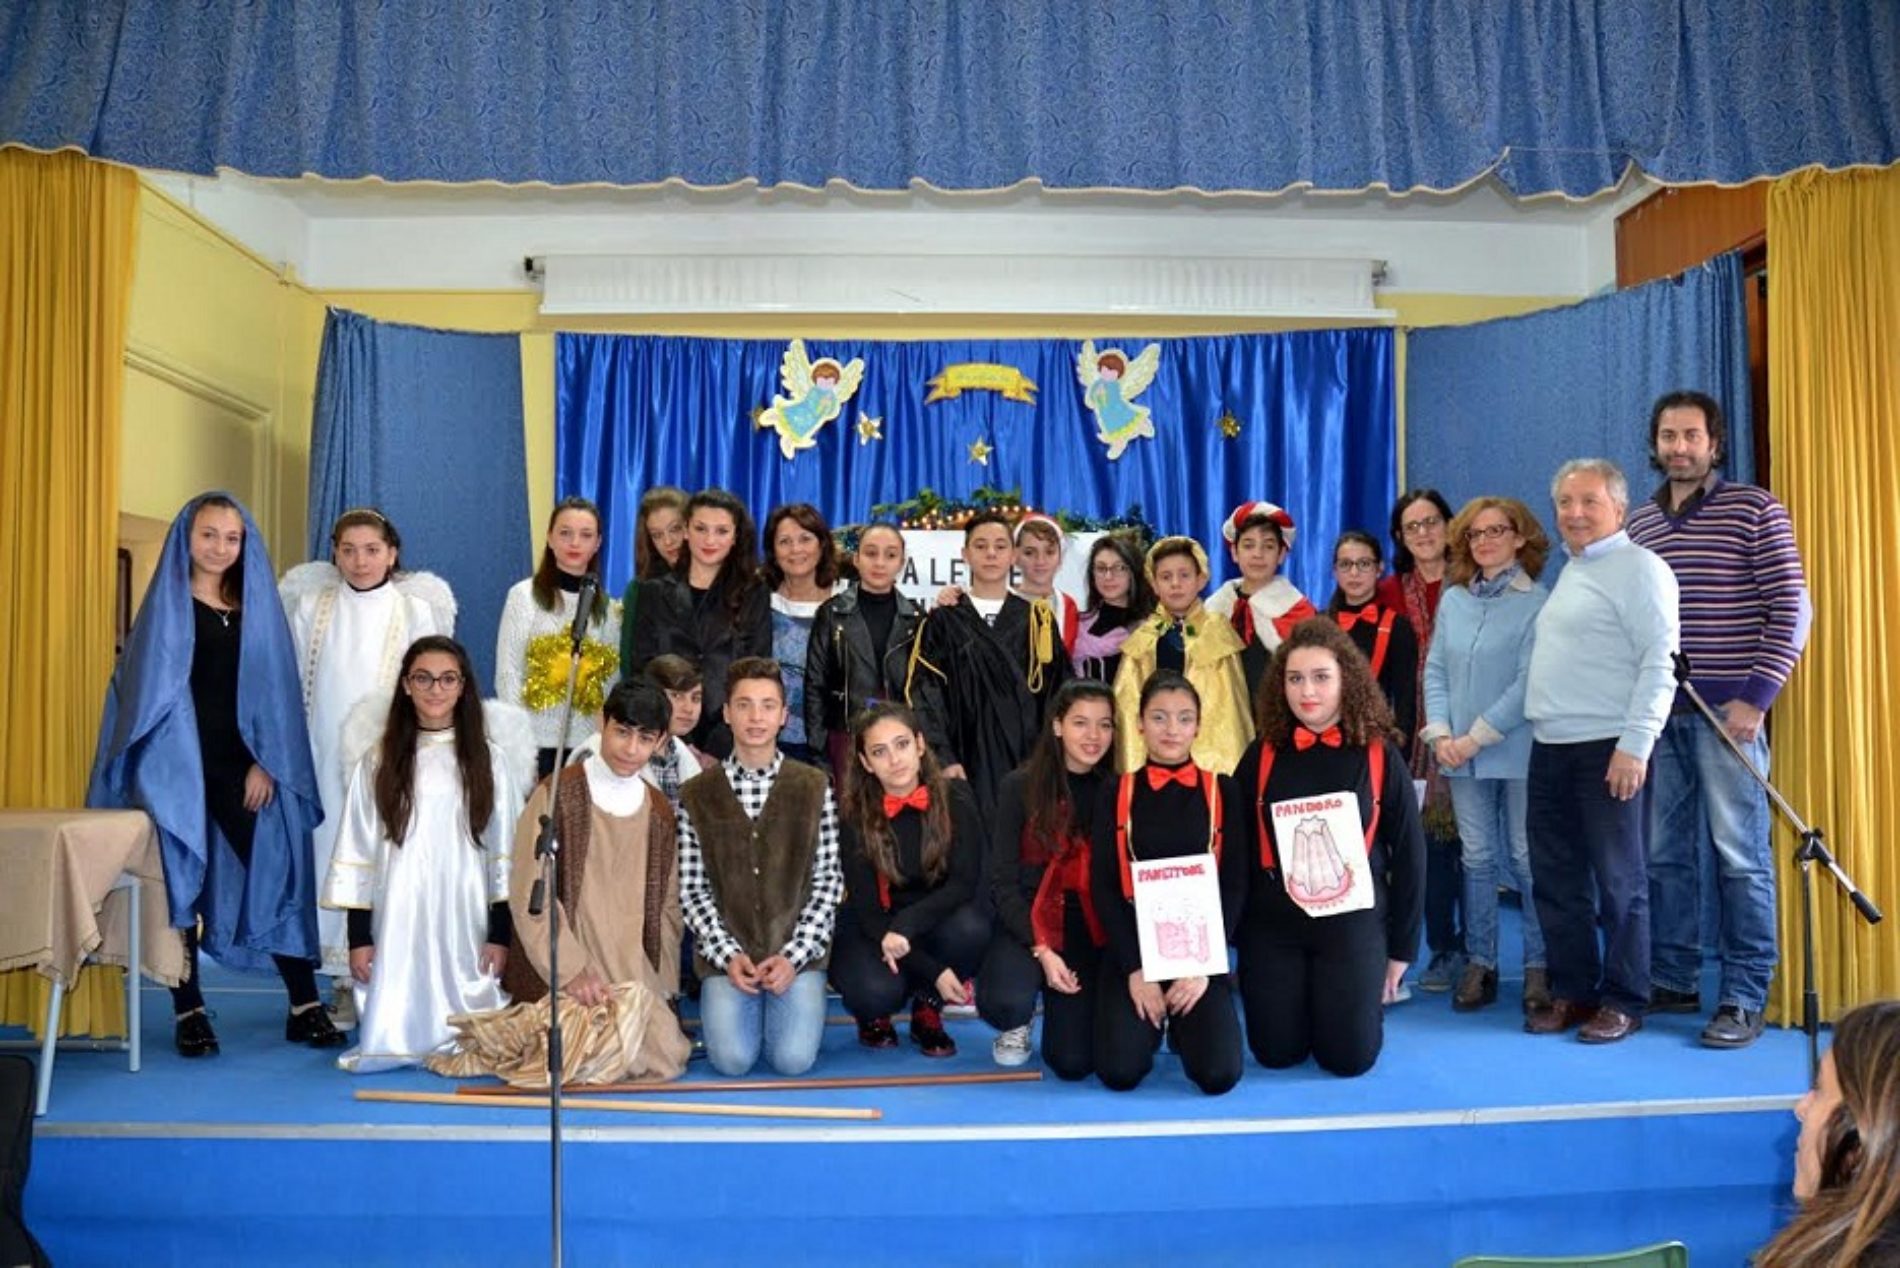 Rappresentazione teatrale “Processo al Natale” della scuola “G. Verga” di Barrafranca